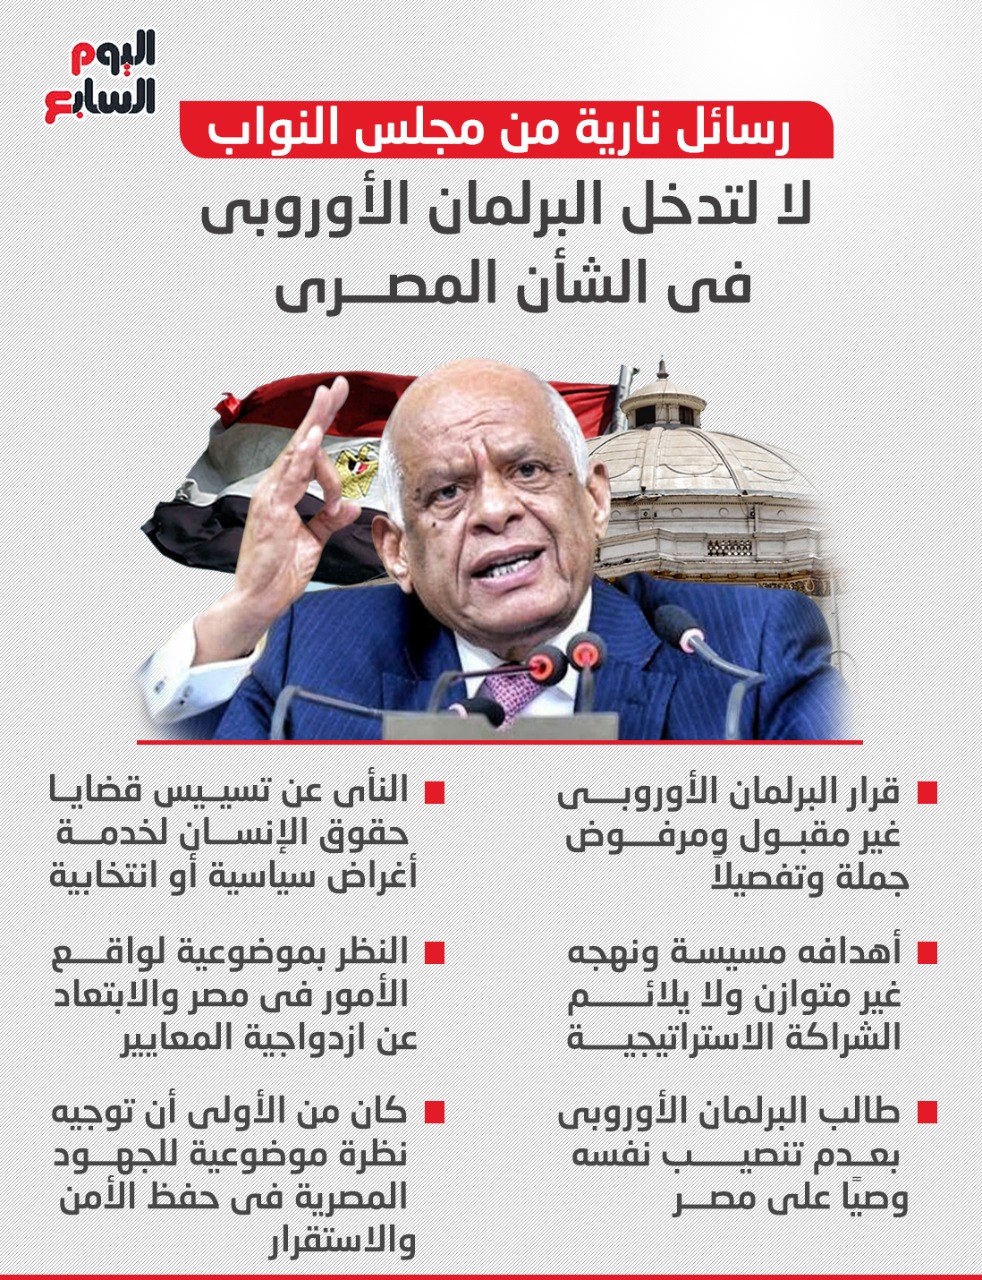 رسائل حاسمة وجهها مجلس النواب المصرى برئاسة الدكتور على عبد العال، رفضاً لقرار البرلمان الأوروبى بشأن حالة حقوق الإنسان فى مصر